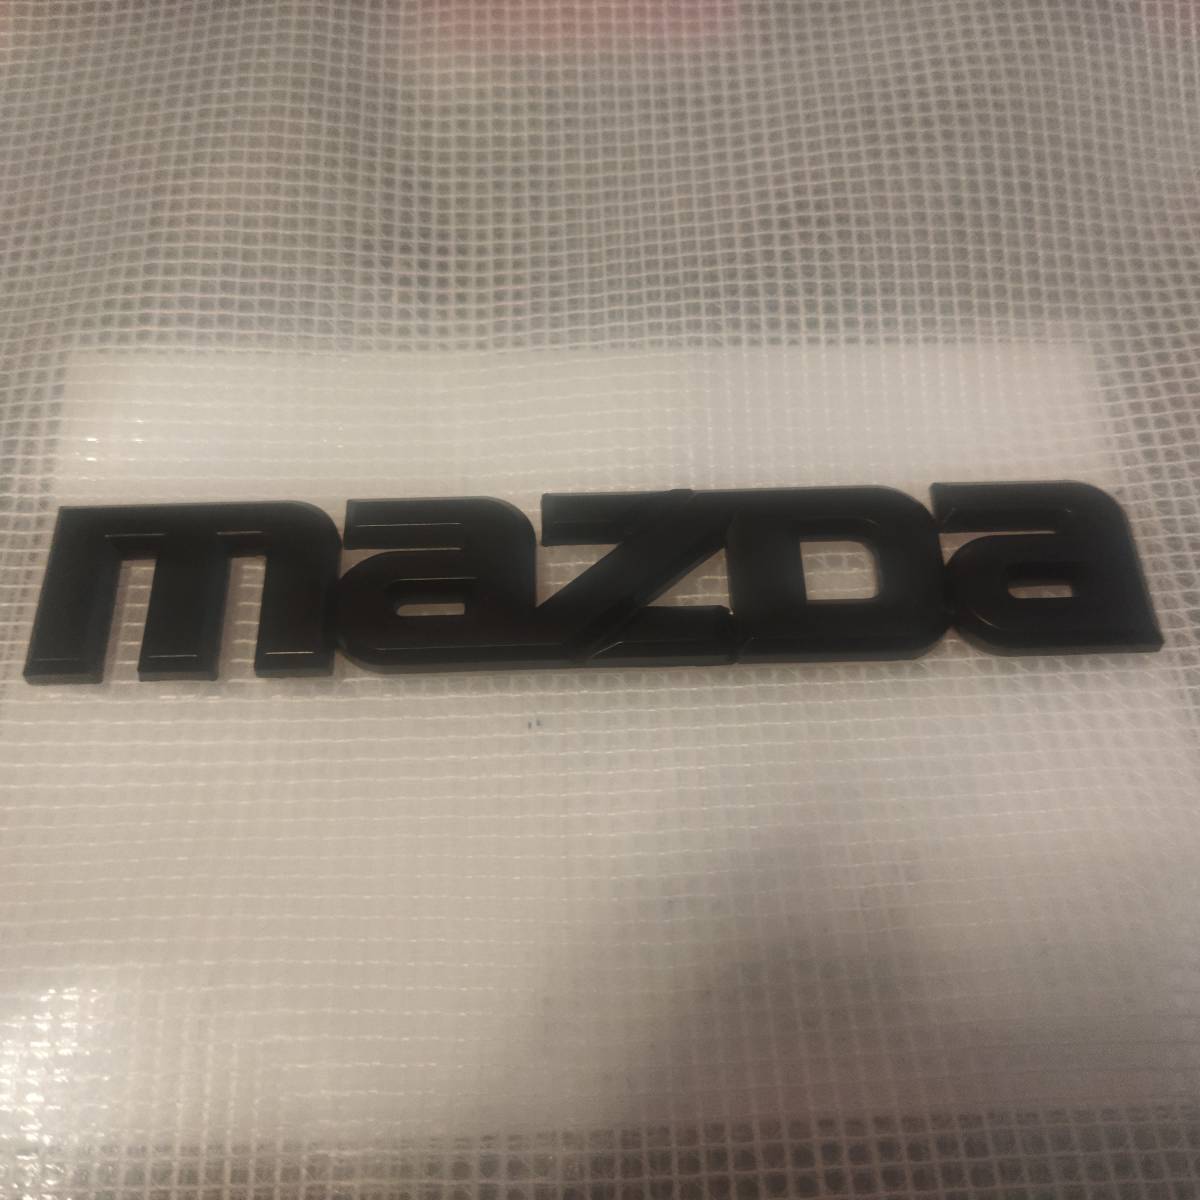 MAZDA(マツダ) エンブレム マットブラック 横14.4cm×縦2.7cm_画像1